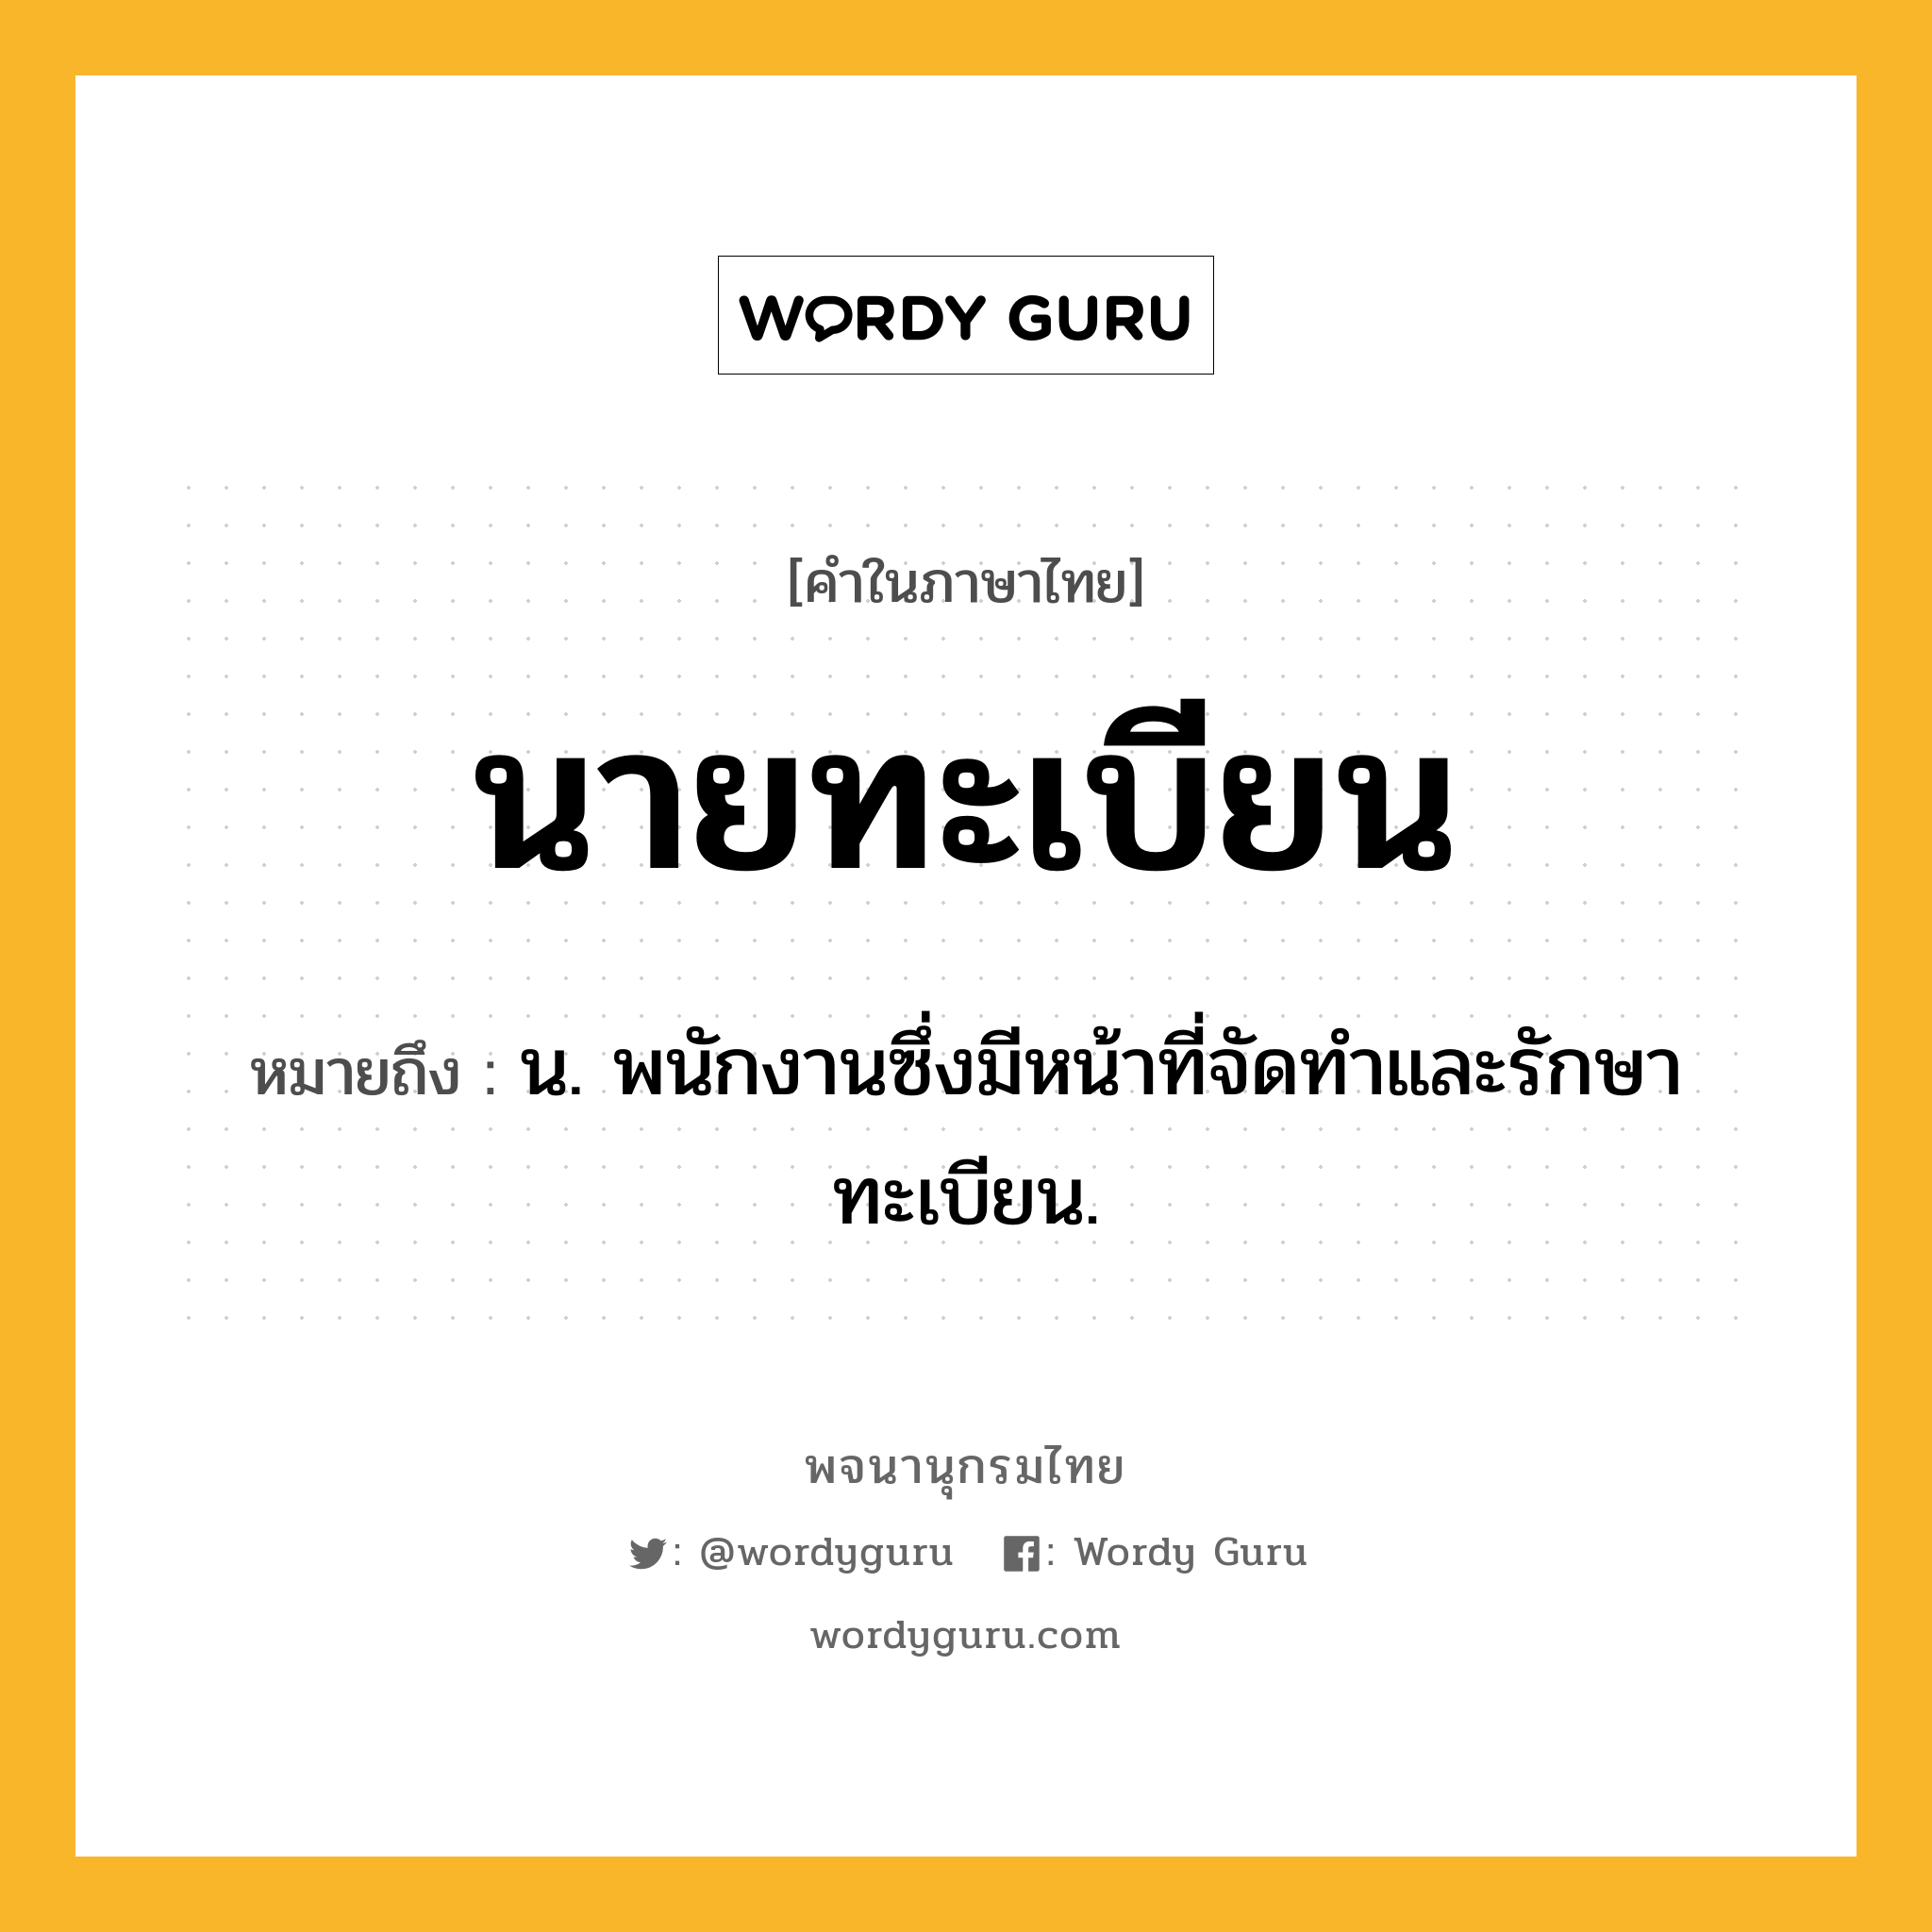 นายทะเบียน ความหมาย หมายถึงอะไร?, คำในภาษาไทย นายทะเบียน หมายถึง น. พนักงานซึ่งมีหน้าที่จัดทำและรักษาทะเบียน.